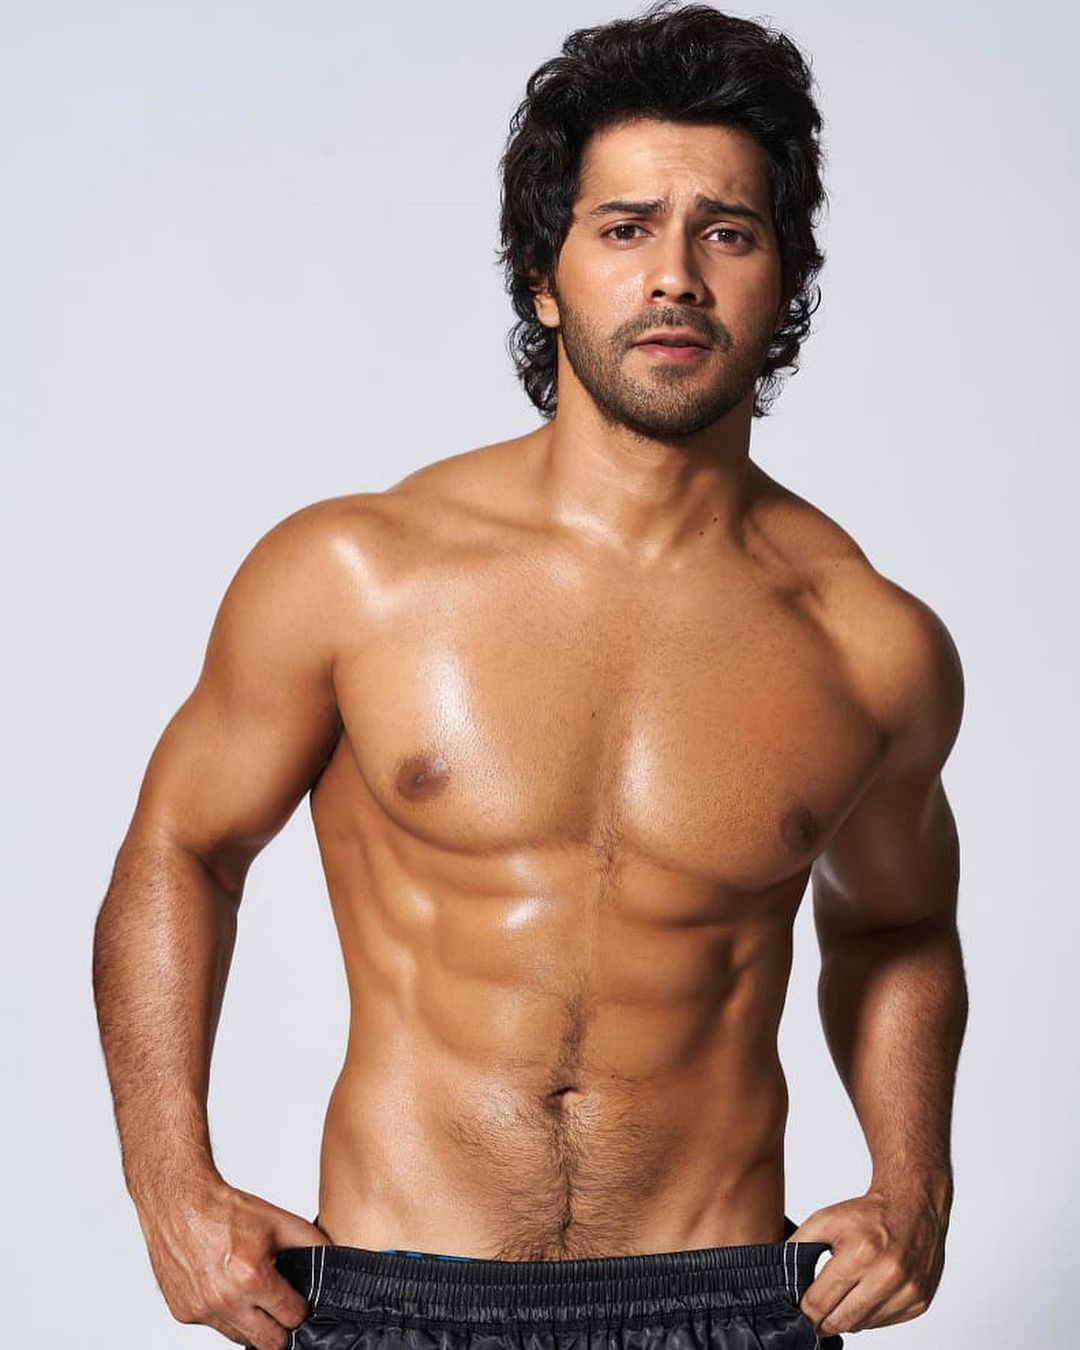 Varun Dhawan looks hot displaying his toned torso